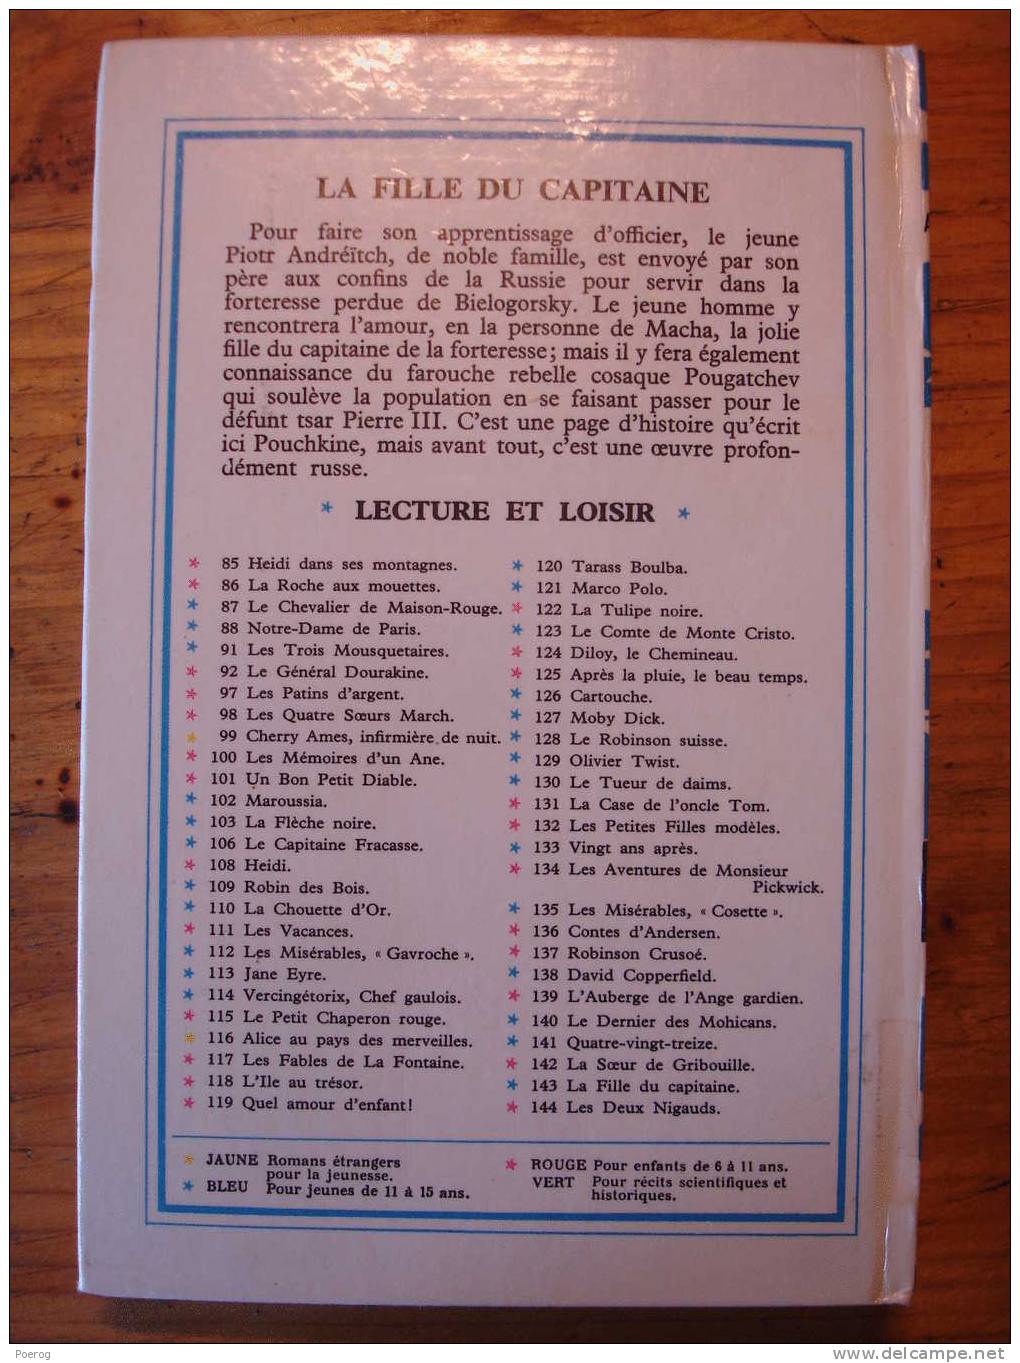 ALEXANDRE POUCHKINE - LA FILLE DU CAPITAINE - LECTURE ET LOISIR N°143 - LIBRAIRIE CHARPENTIER PARIS - 1969 - J. GILLY - Collection Lectures Et Loisirs